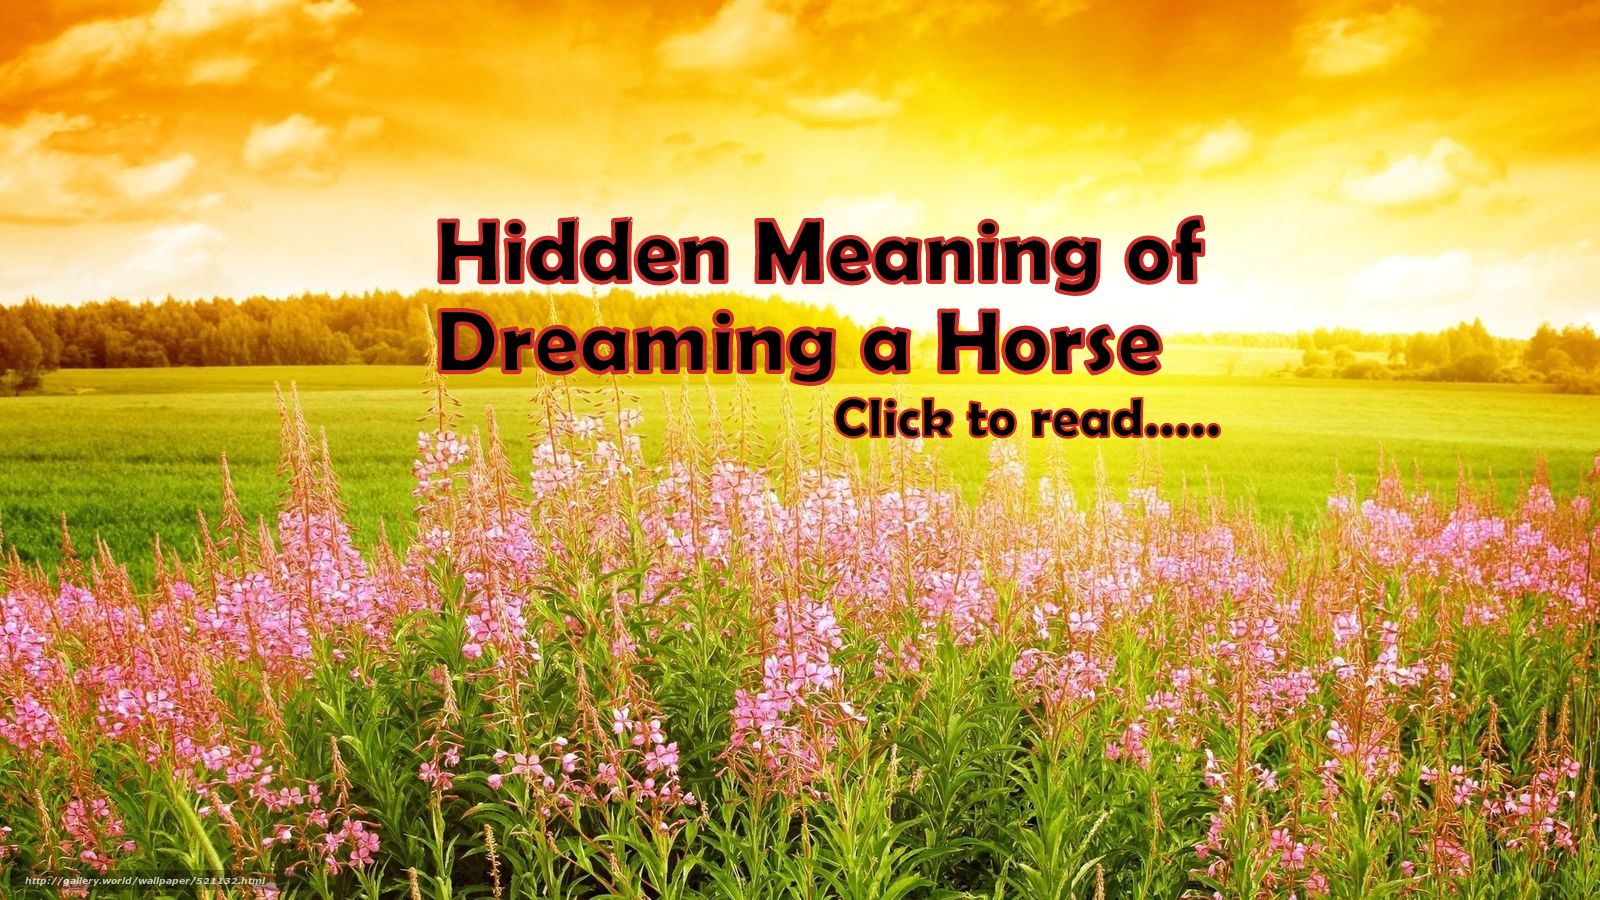 Horse Symbol in dream